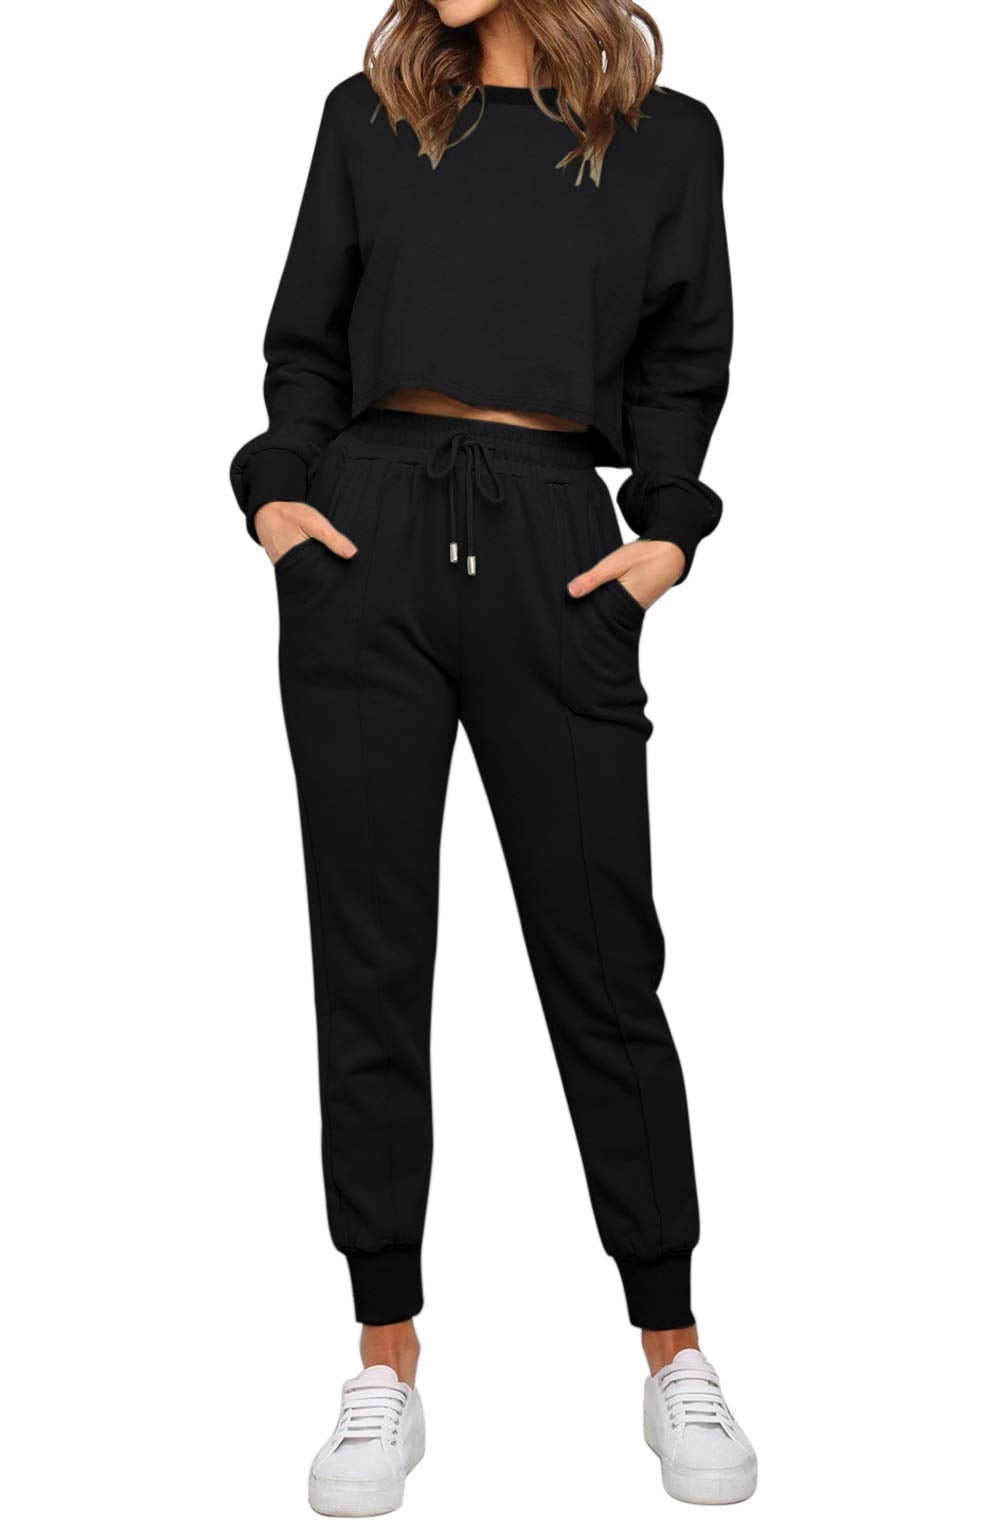 CYZ Women's Cotton Stretch Knit Pajamas Jogger Pants/Lounge Pants